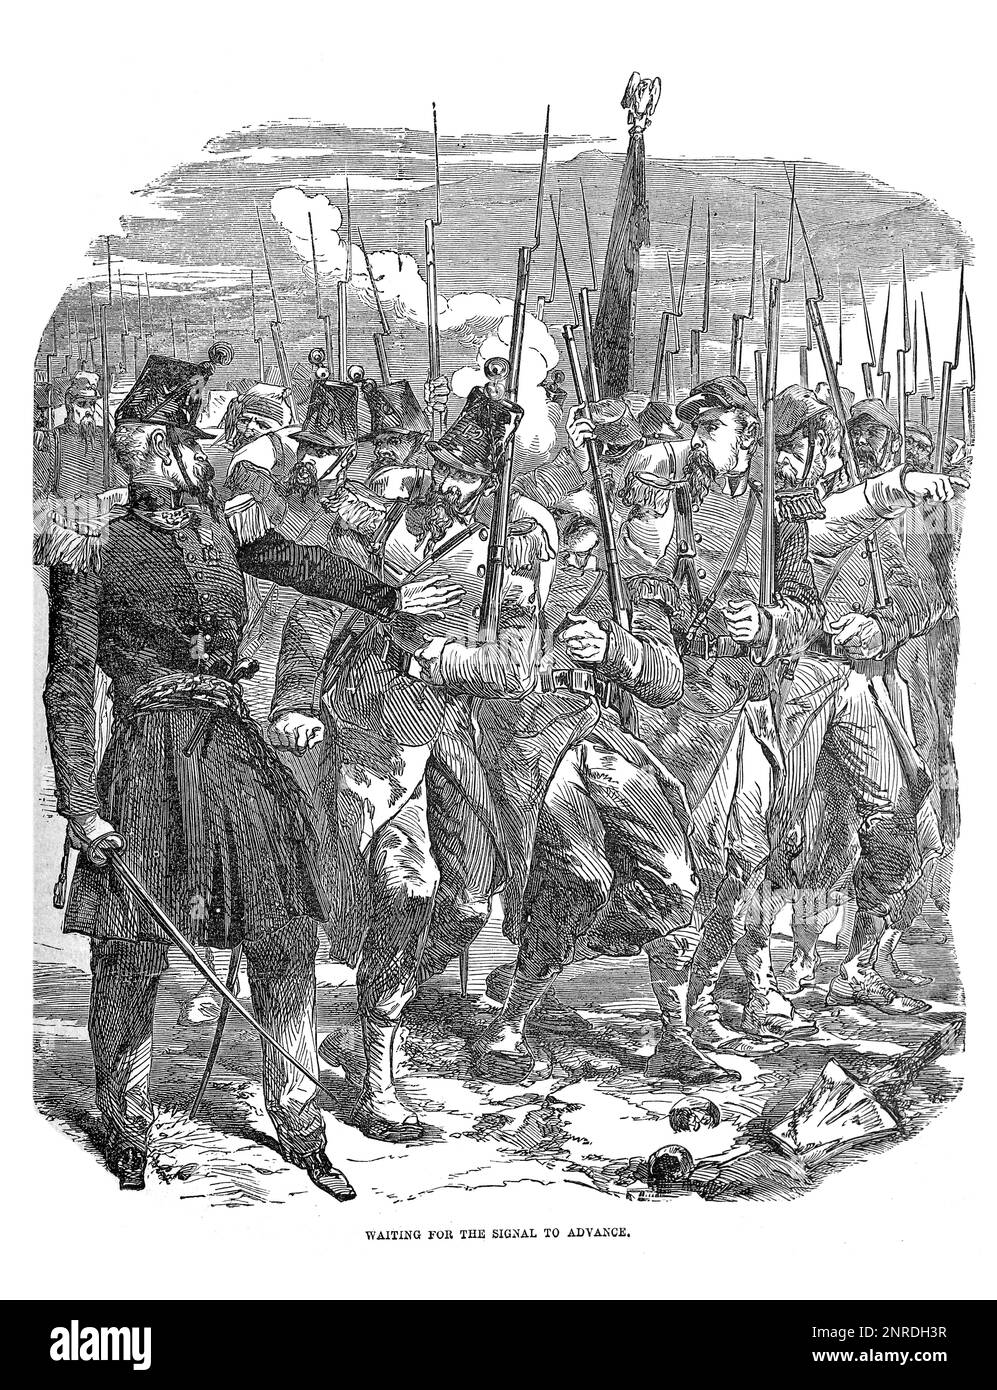 Image générique; fantassins en attente du signal à avancer; Guerre de Crimée 1855. Siège de Sébastopol. Illustration en noir et blanc Banque D'Images